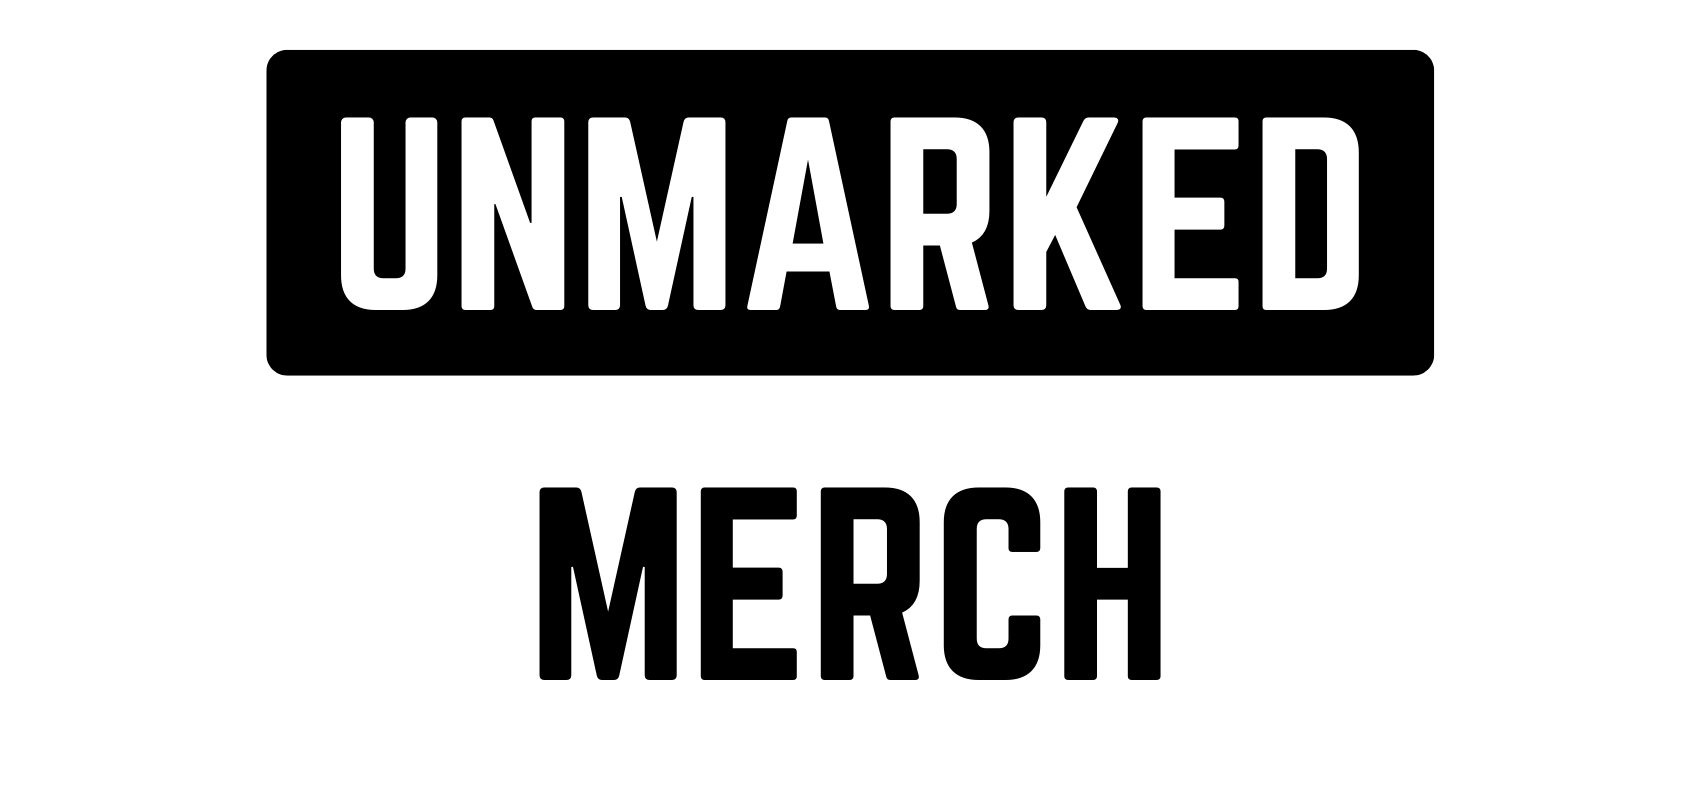 Unmarked Merch LLC